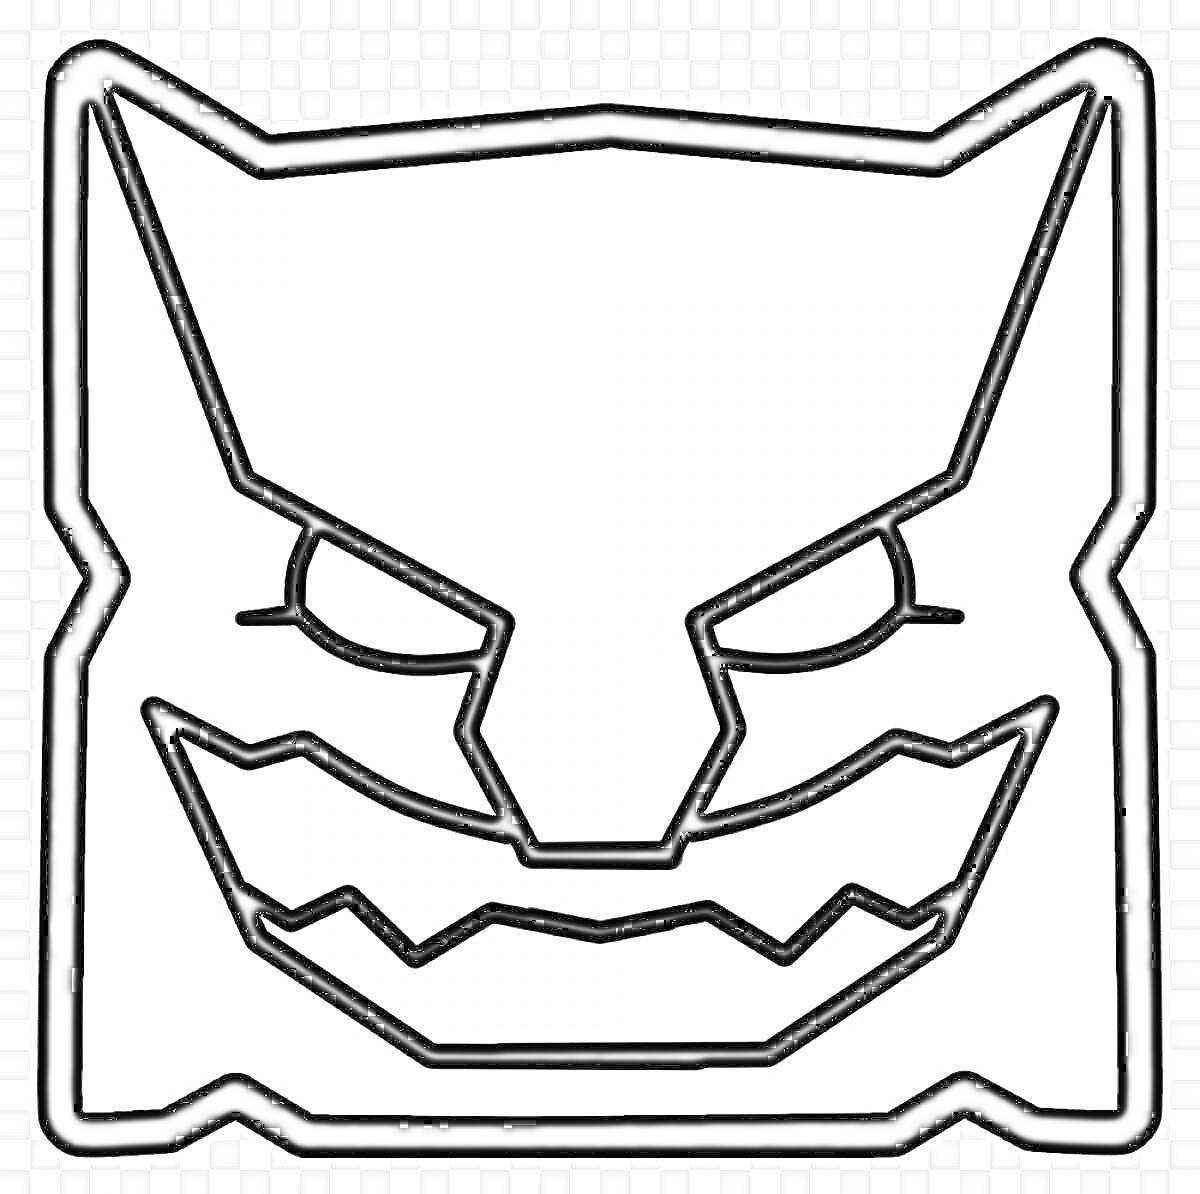 Раскраска Изображение демона с острыми ушами и зубами для раскраски. Элемент игры Geometry Dash.